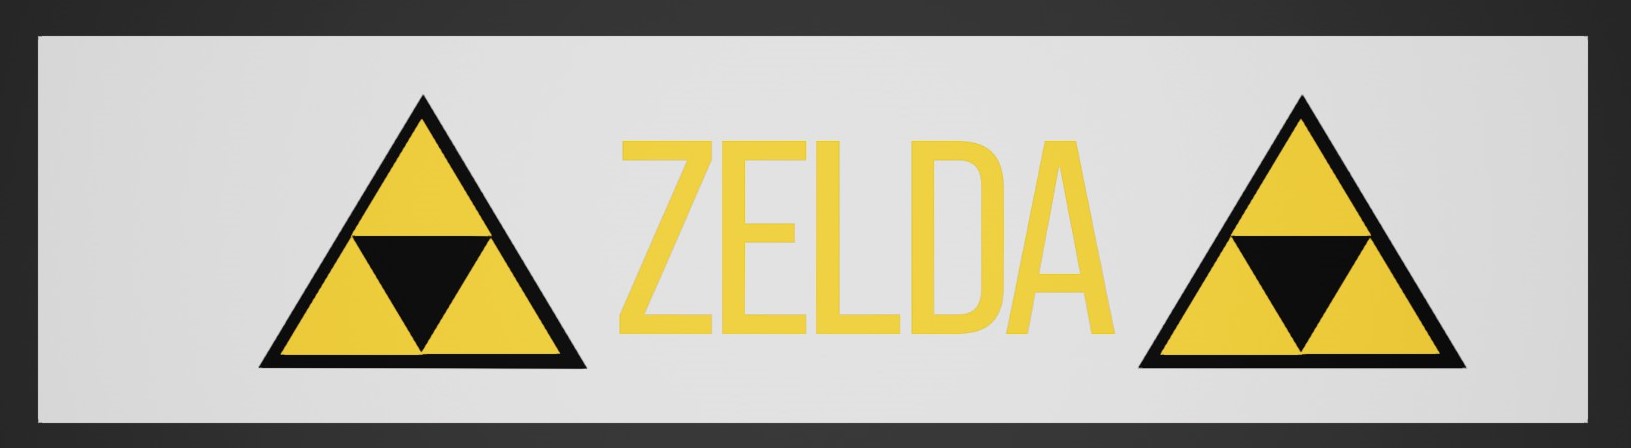 ZeldaSticker.jpg